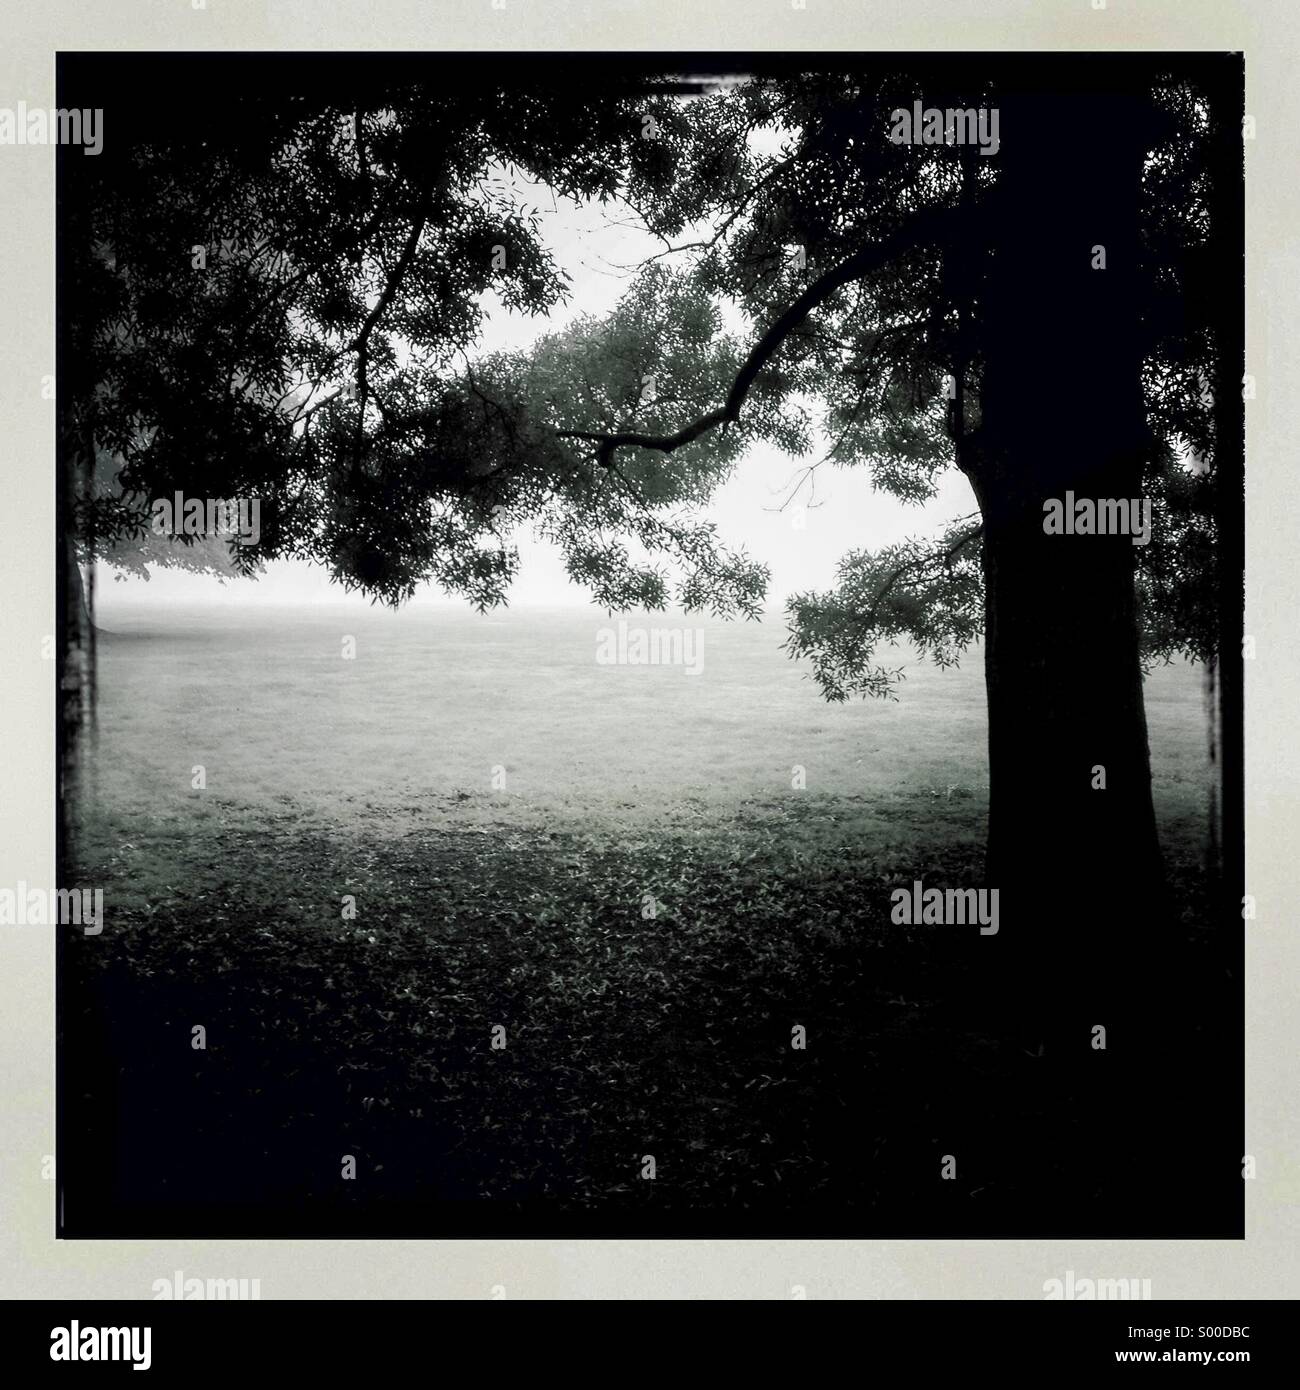 Photo noir et blanc du vieux chêne dans le champ. Format carré. Bordures blanches. London UK Banque D'Images